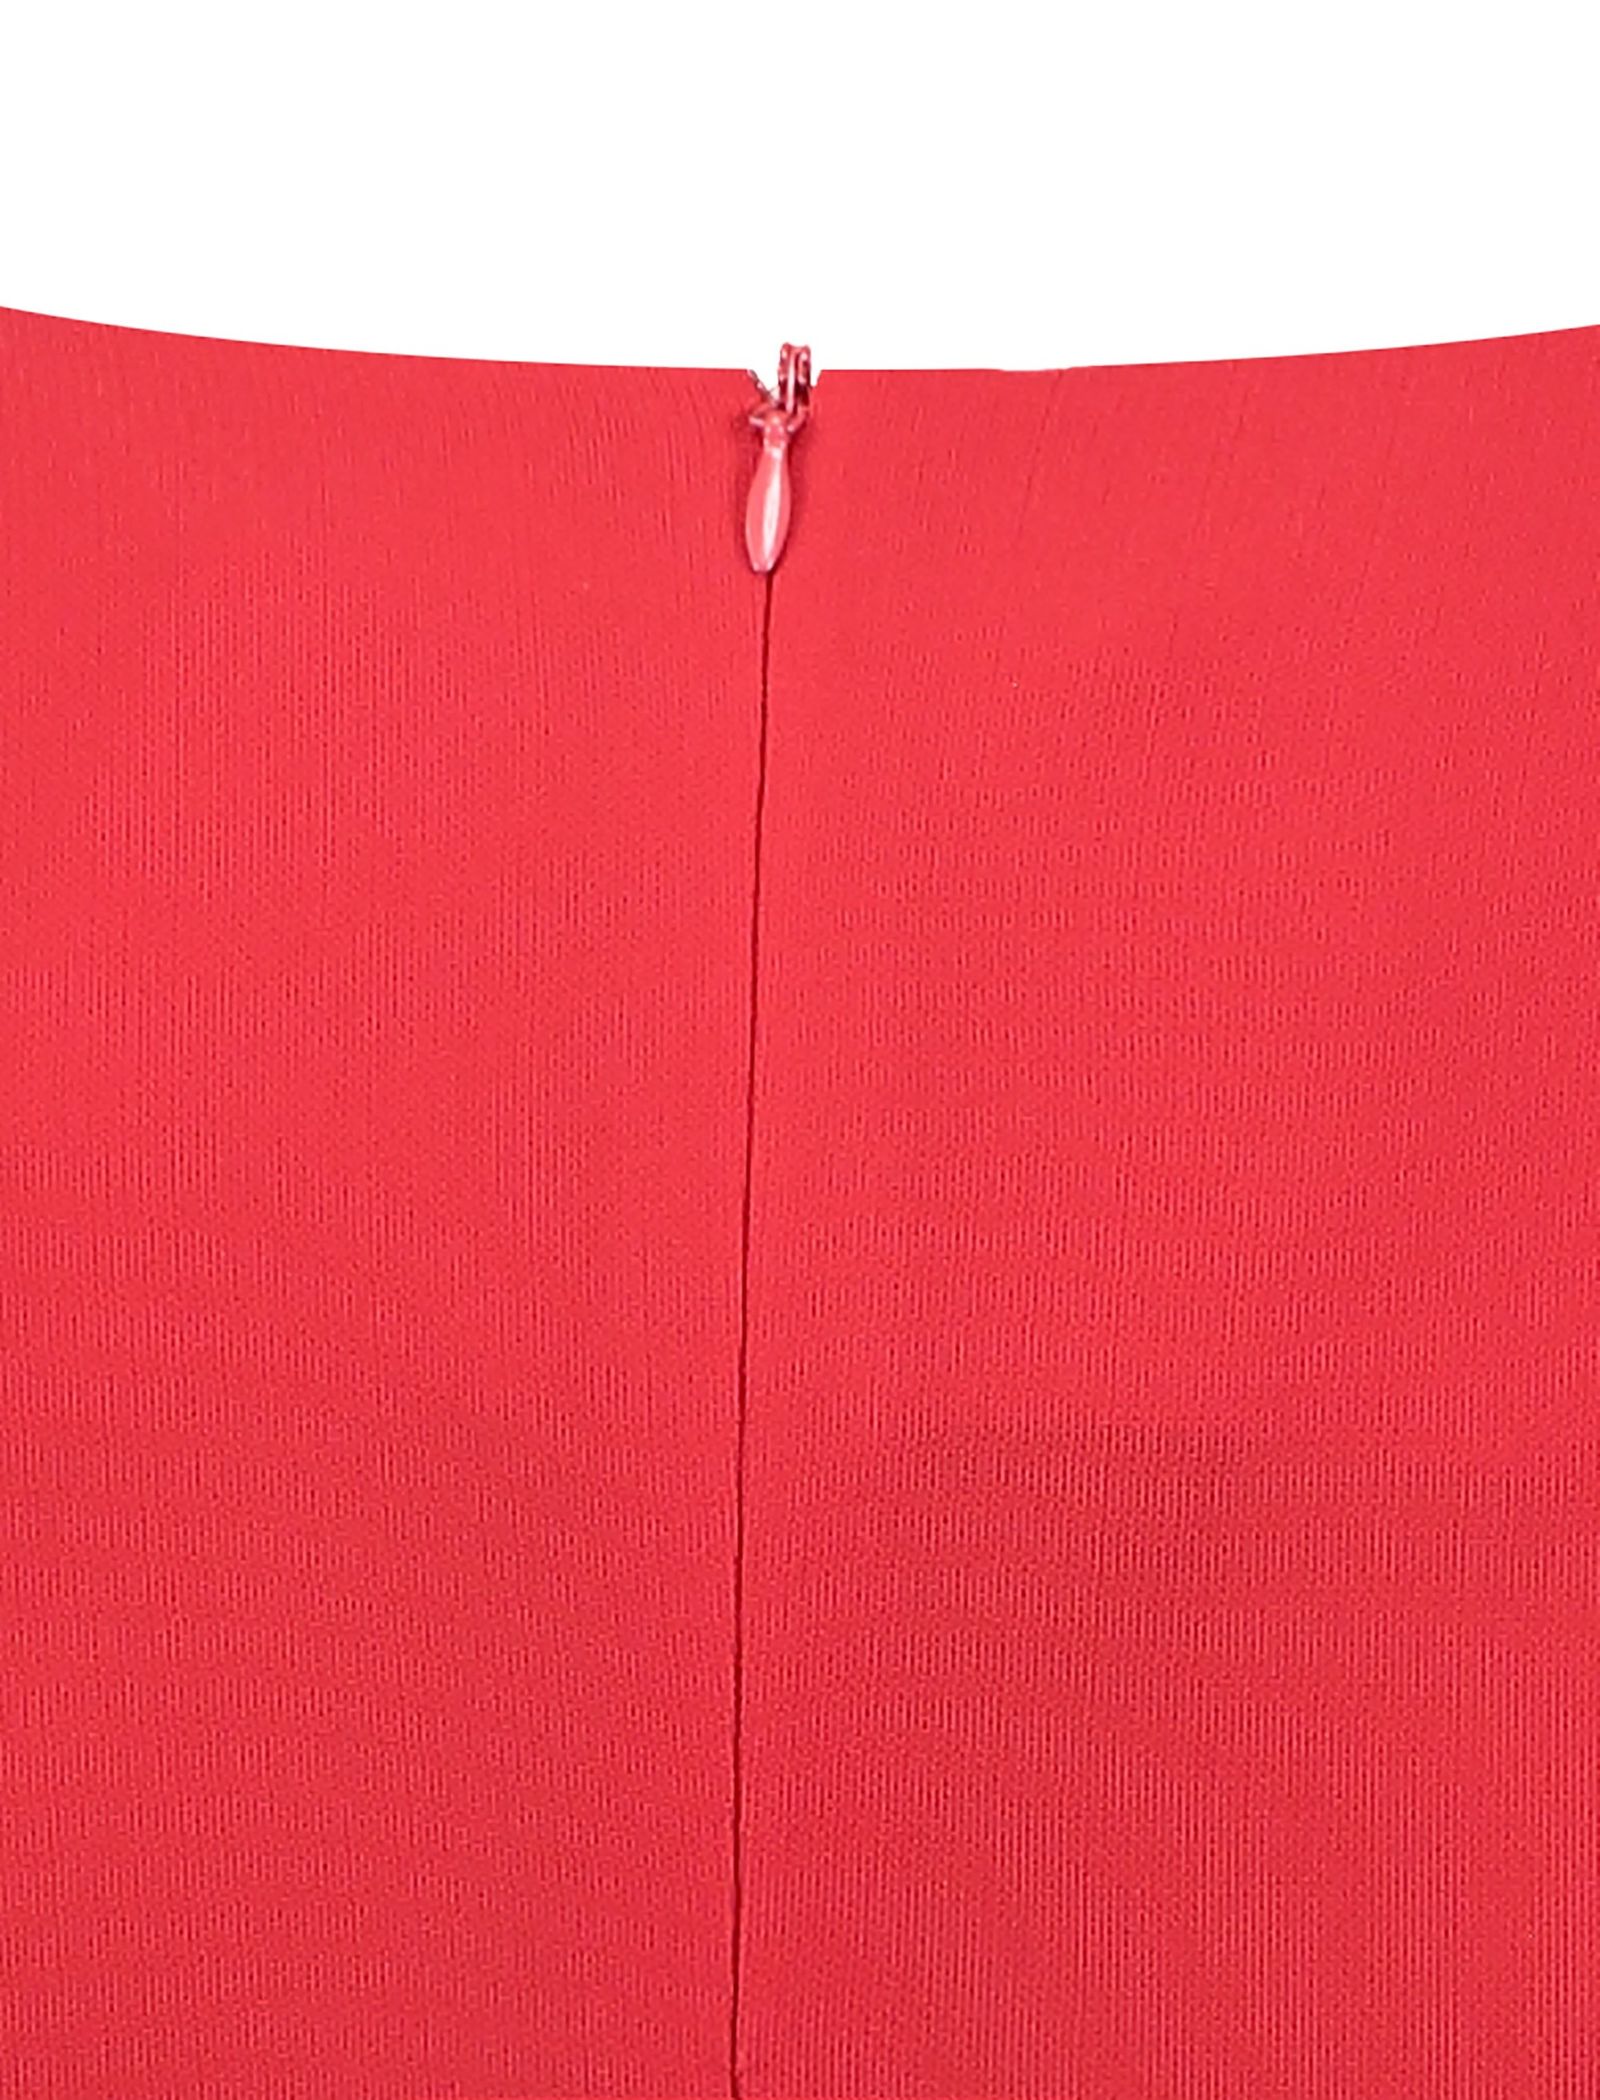 پیراهن کوتاه زنانه - زیبو - قرمز - 5